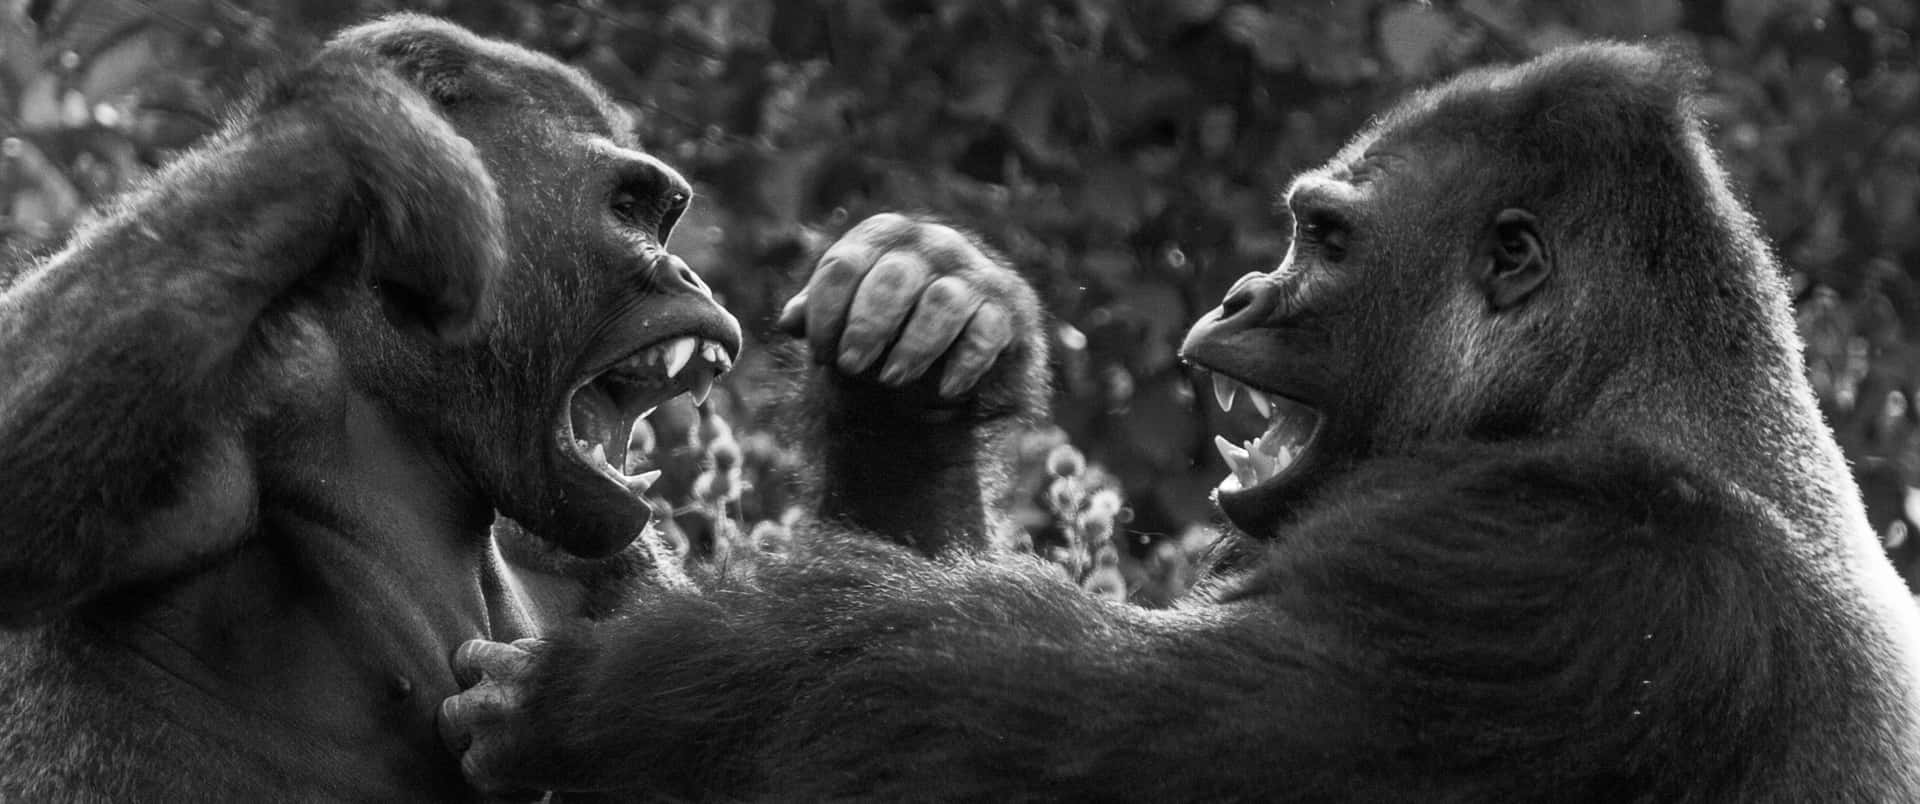 Kampfum Dominanz 3440x1440p Hintergrund Mit Gorillas